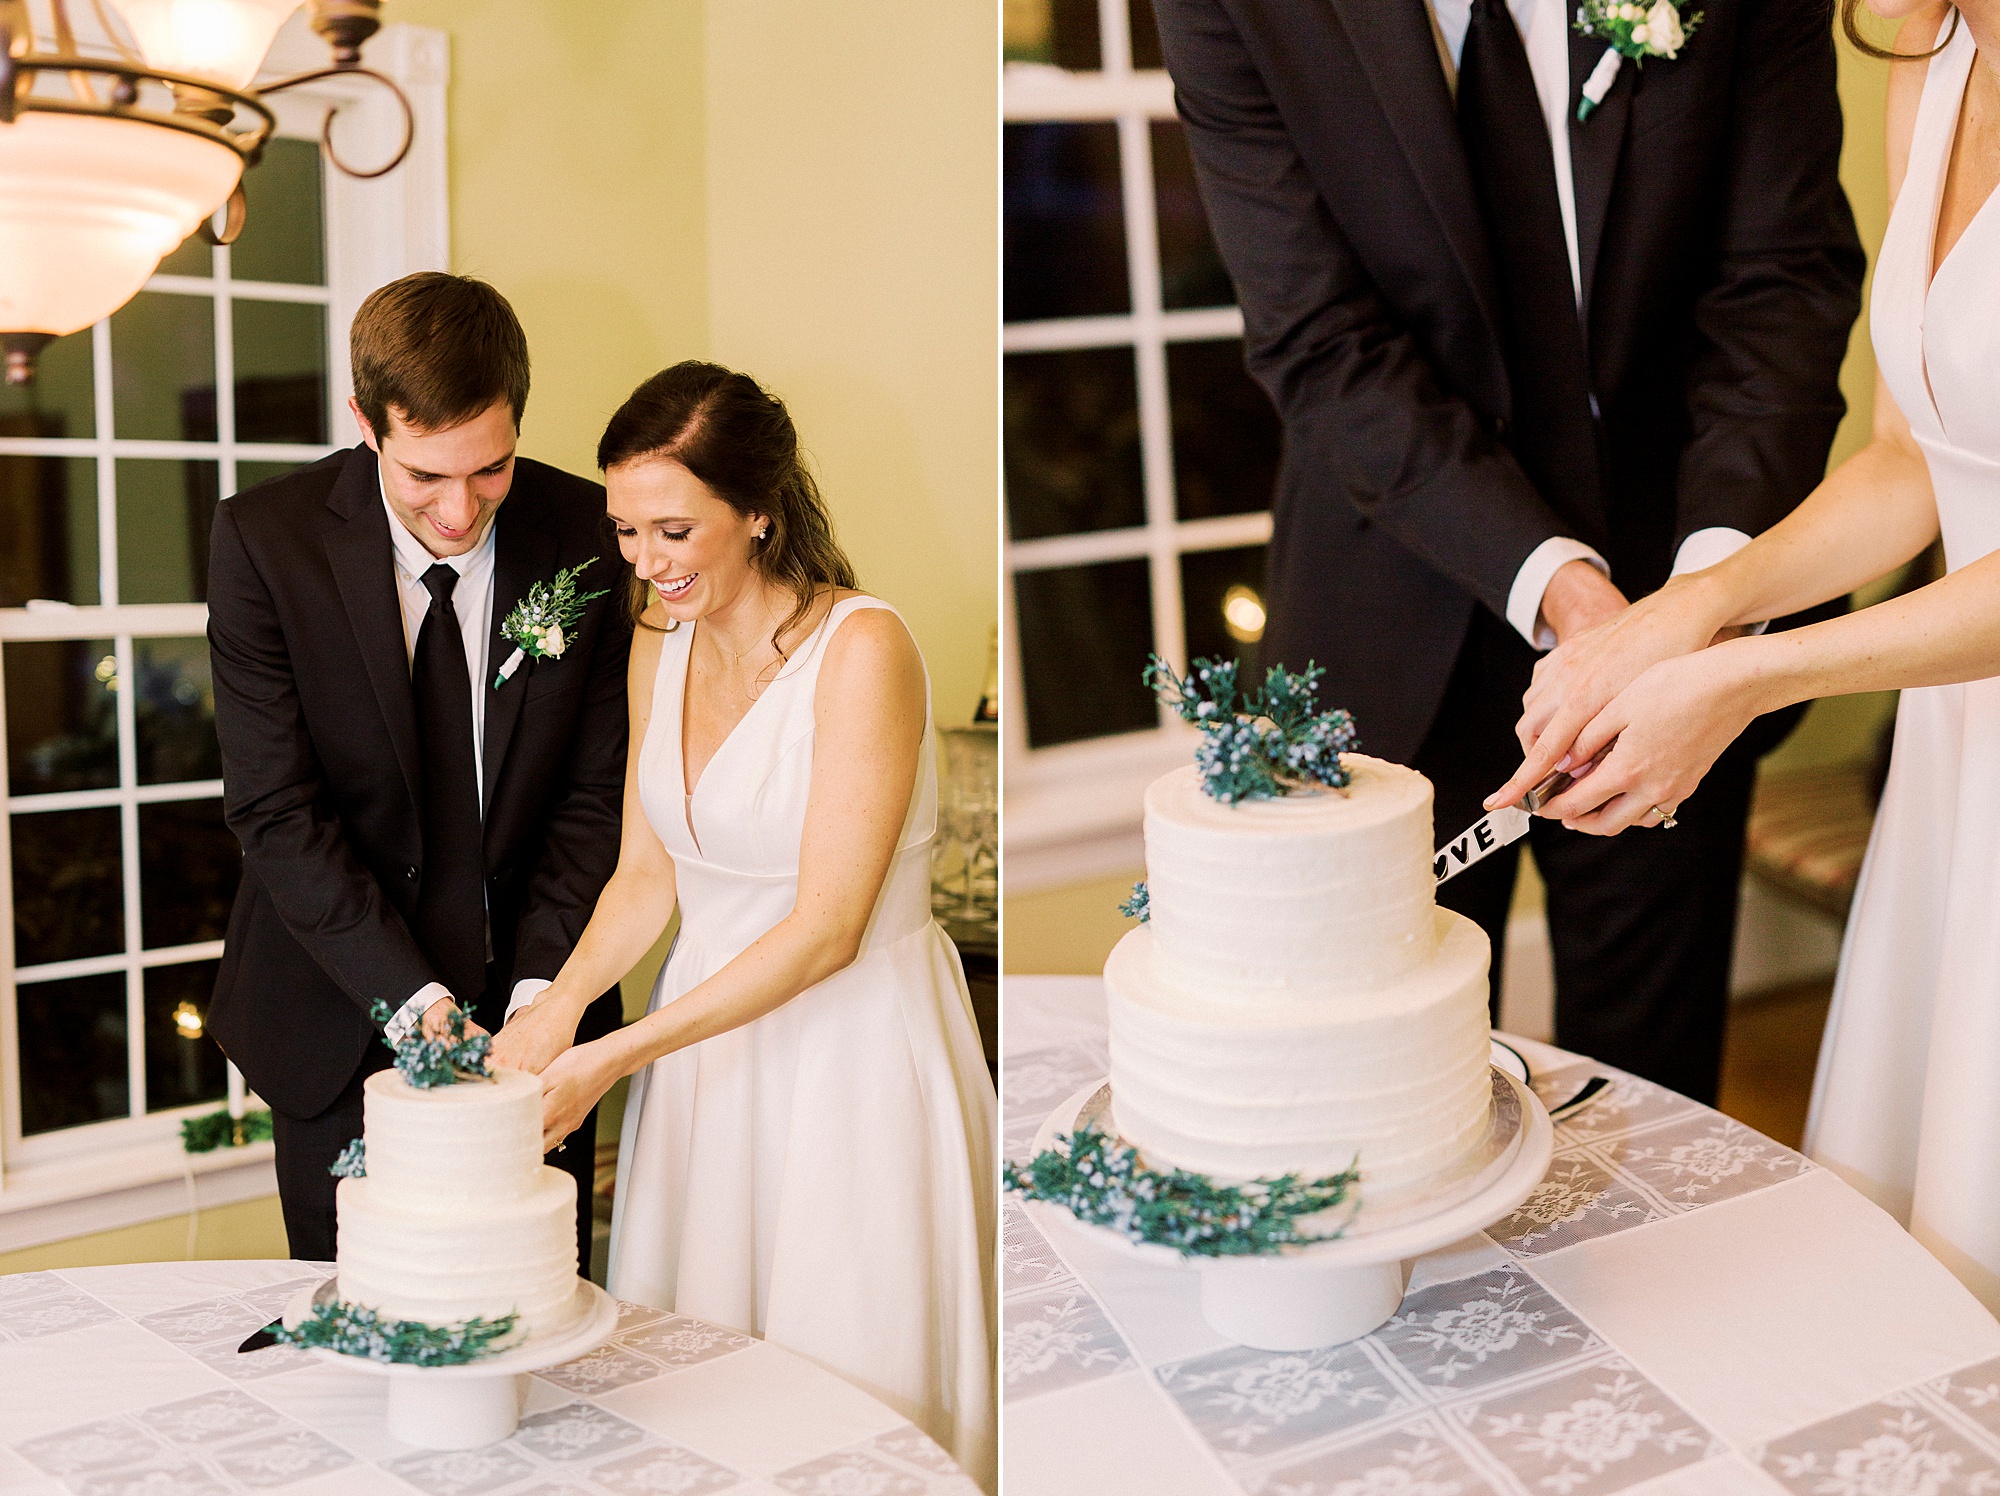 newlyweds cut wedding cake after intimate celebration